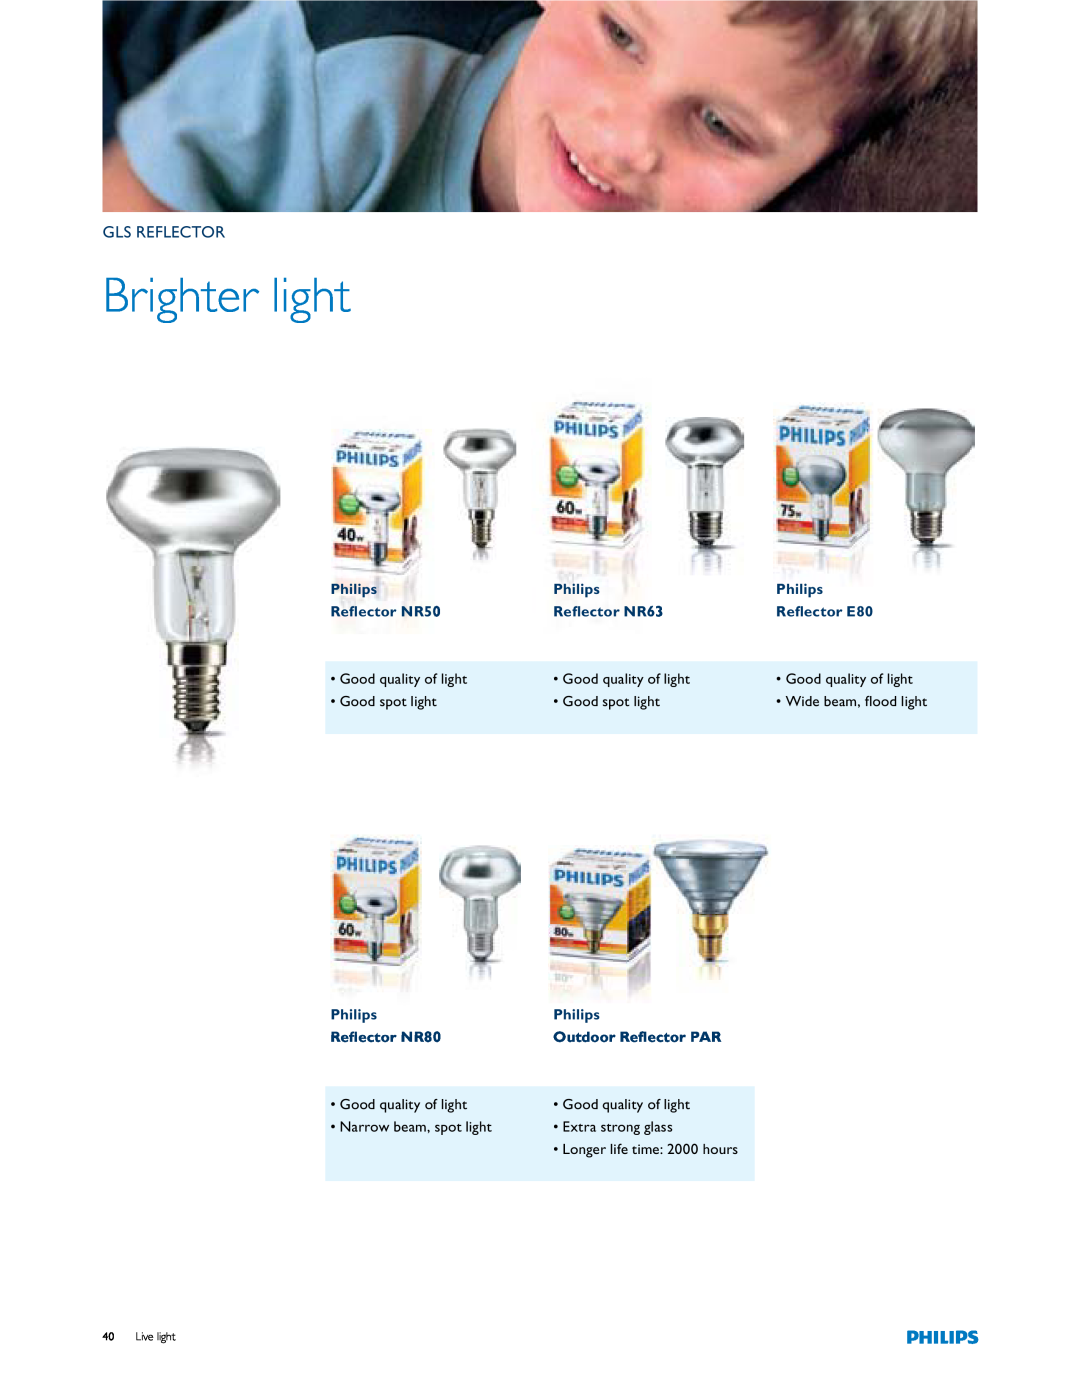 Philips Brighter Light manual Gls Reflector, Brighter light 